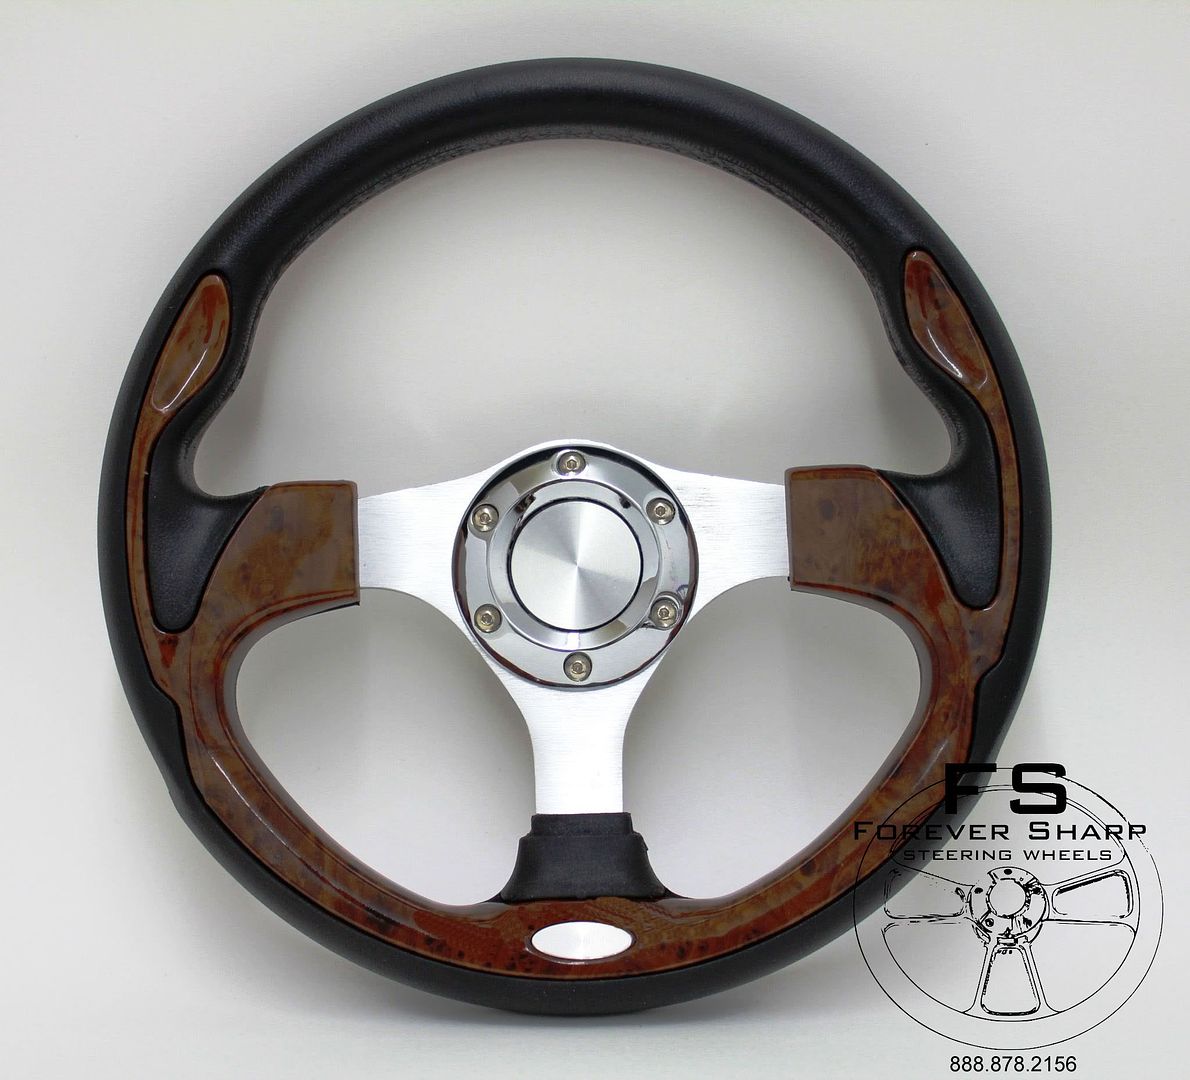 Forever Sharp Steering Wheel Review